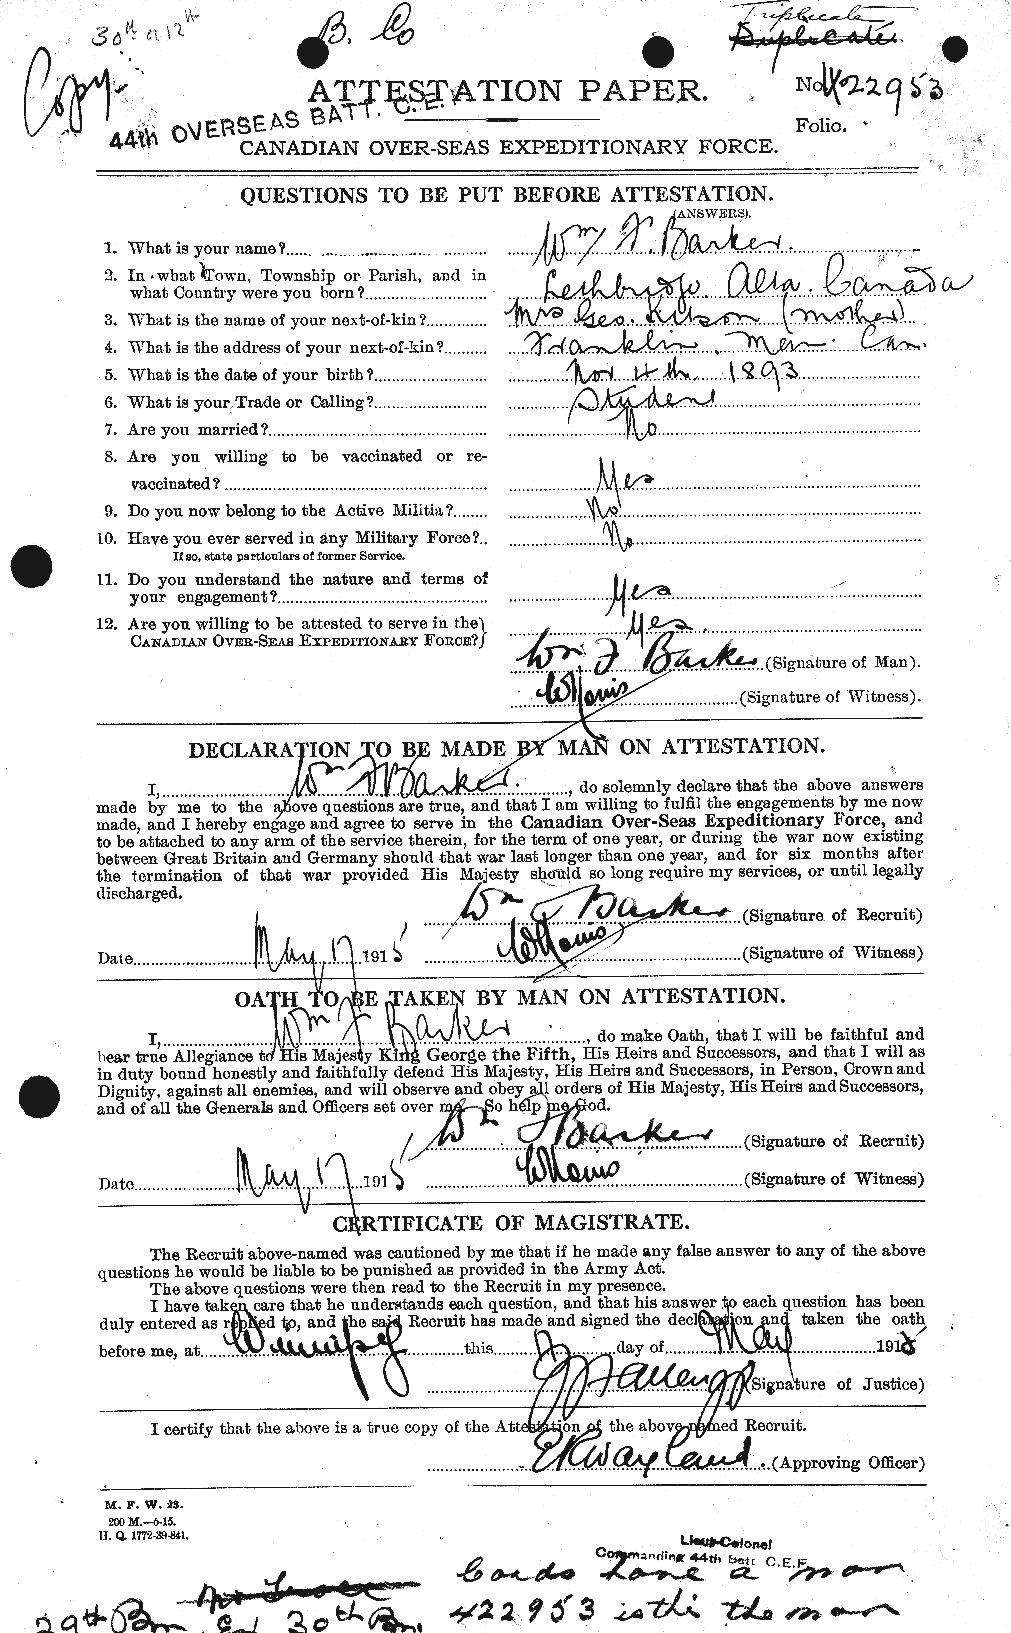 Dossiers du Personnel de la Première Guerre mondiale - CEC 226902a